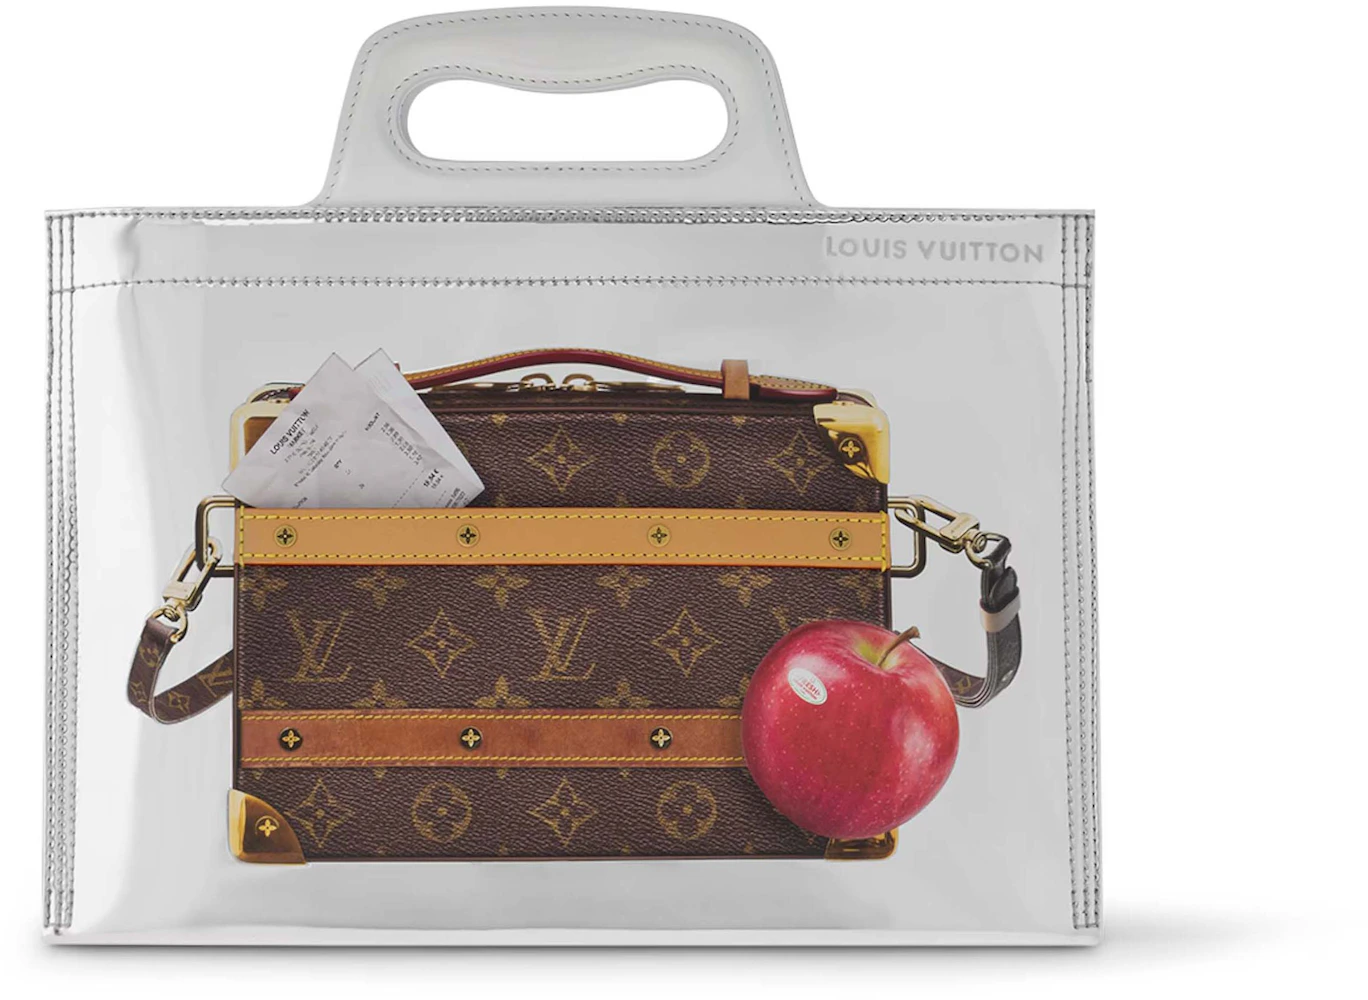 Louis Vuitton Soft Briefcase in Monogram Canvas, 2000